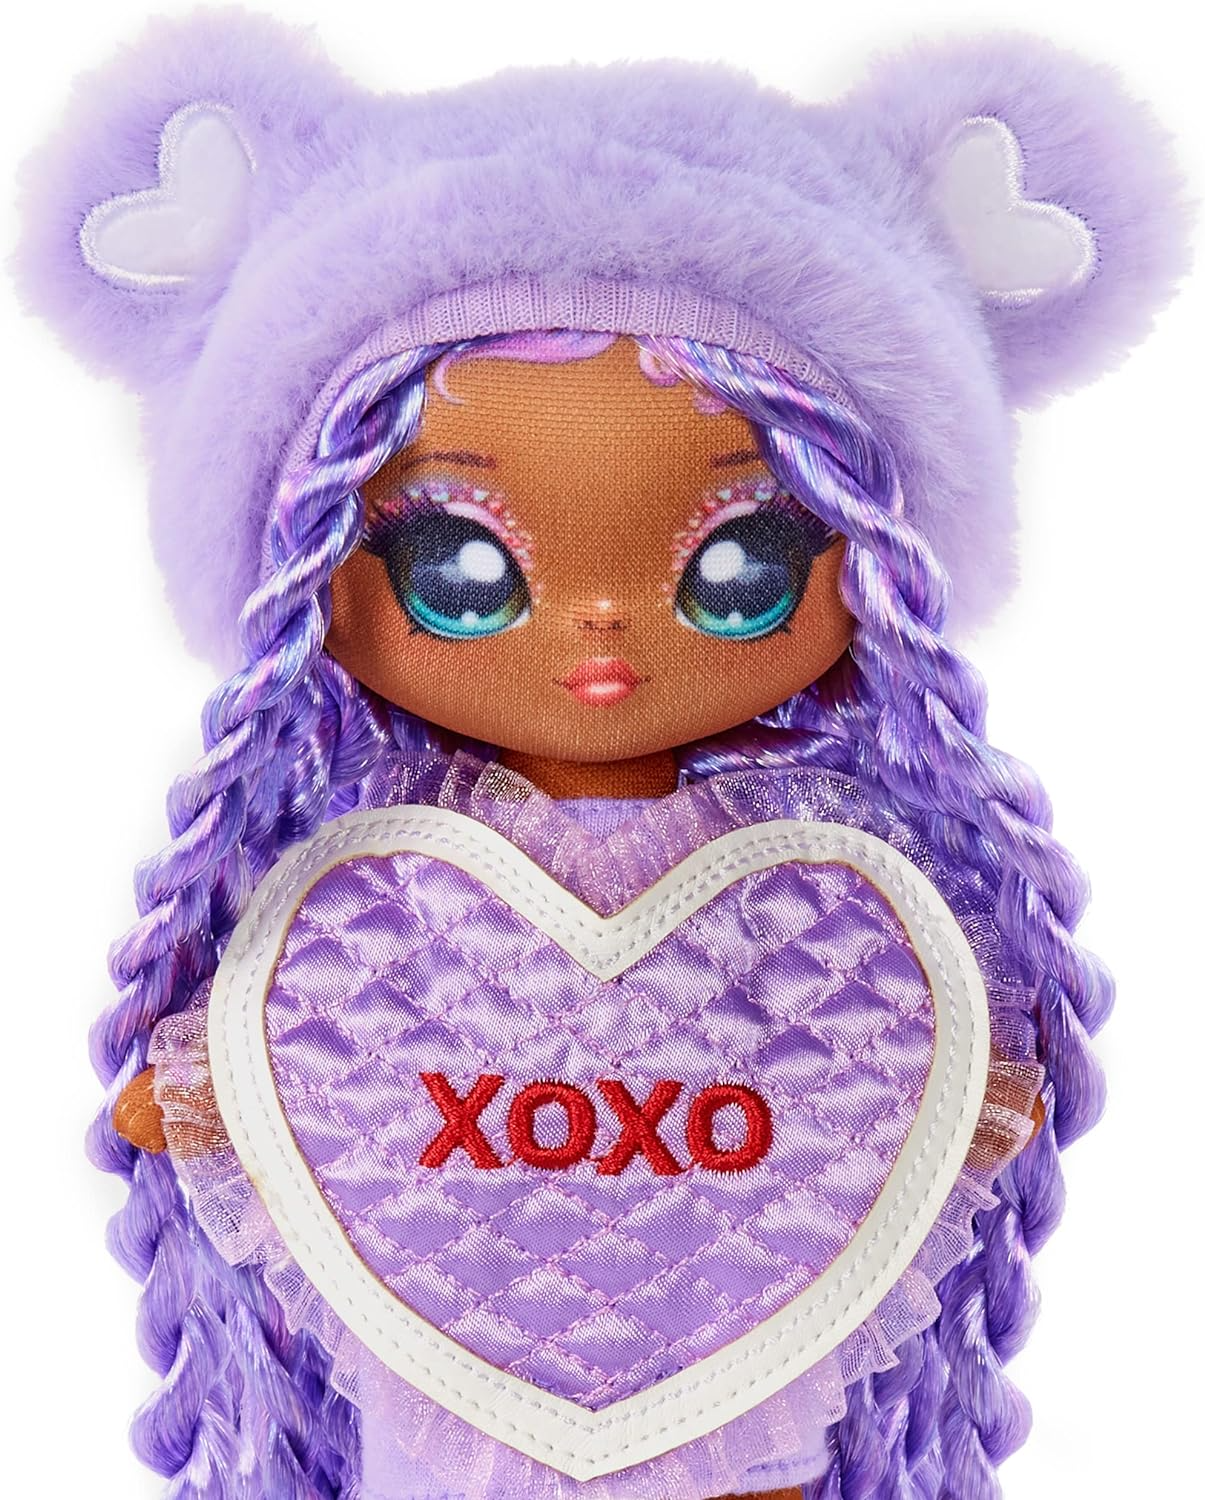 Na! Na! Na! Surprise 581314C3 Sweetest Heart Series Eva Evermore Boneca de pelúcia macia com cabelo roxo, vestido em formato de coração e escova para colecionar, ótimo presente para crianças a partir de 5 anos